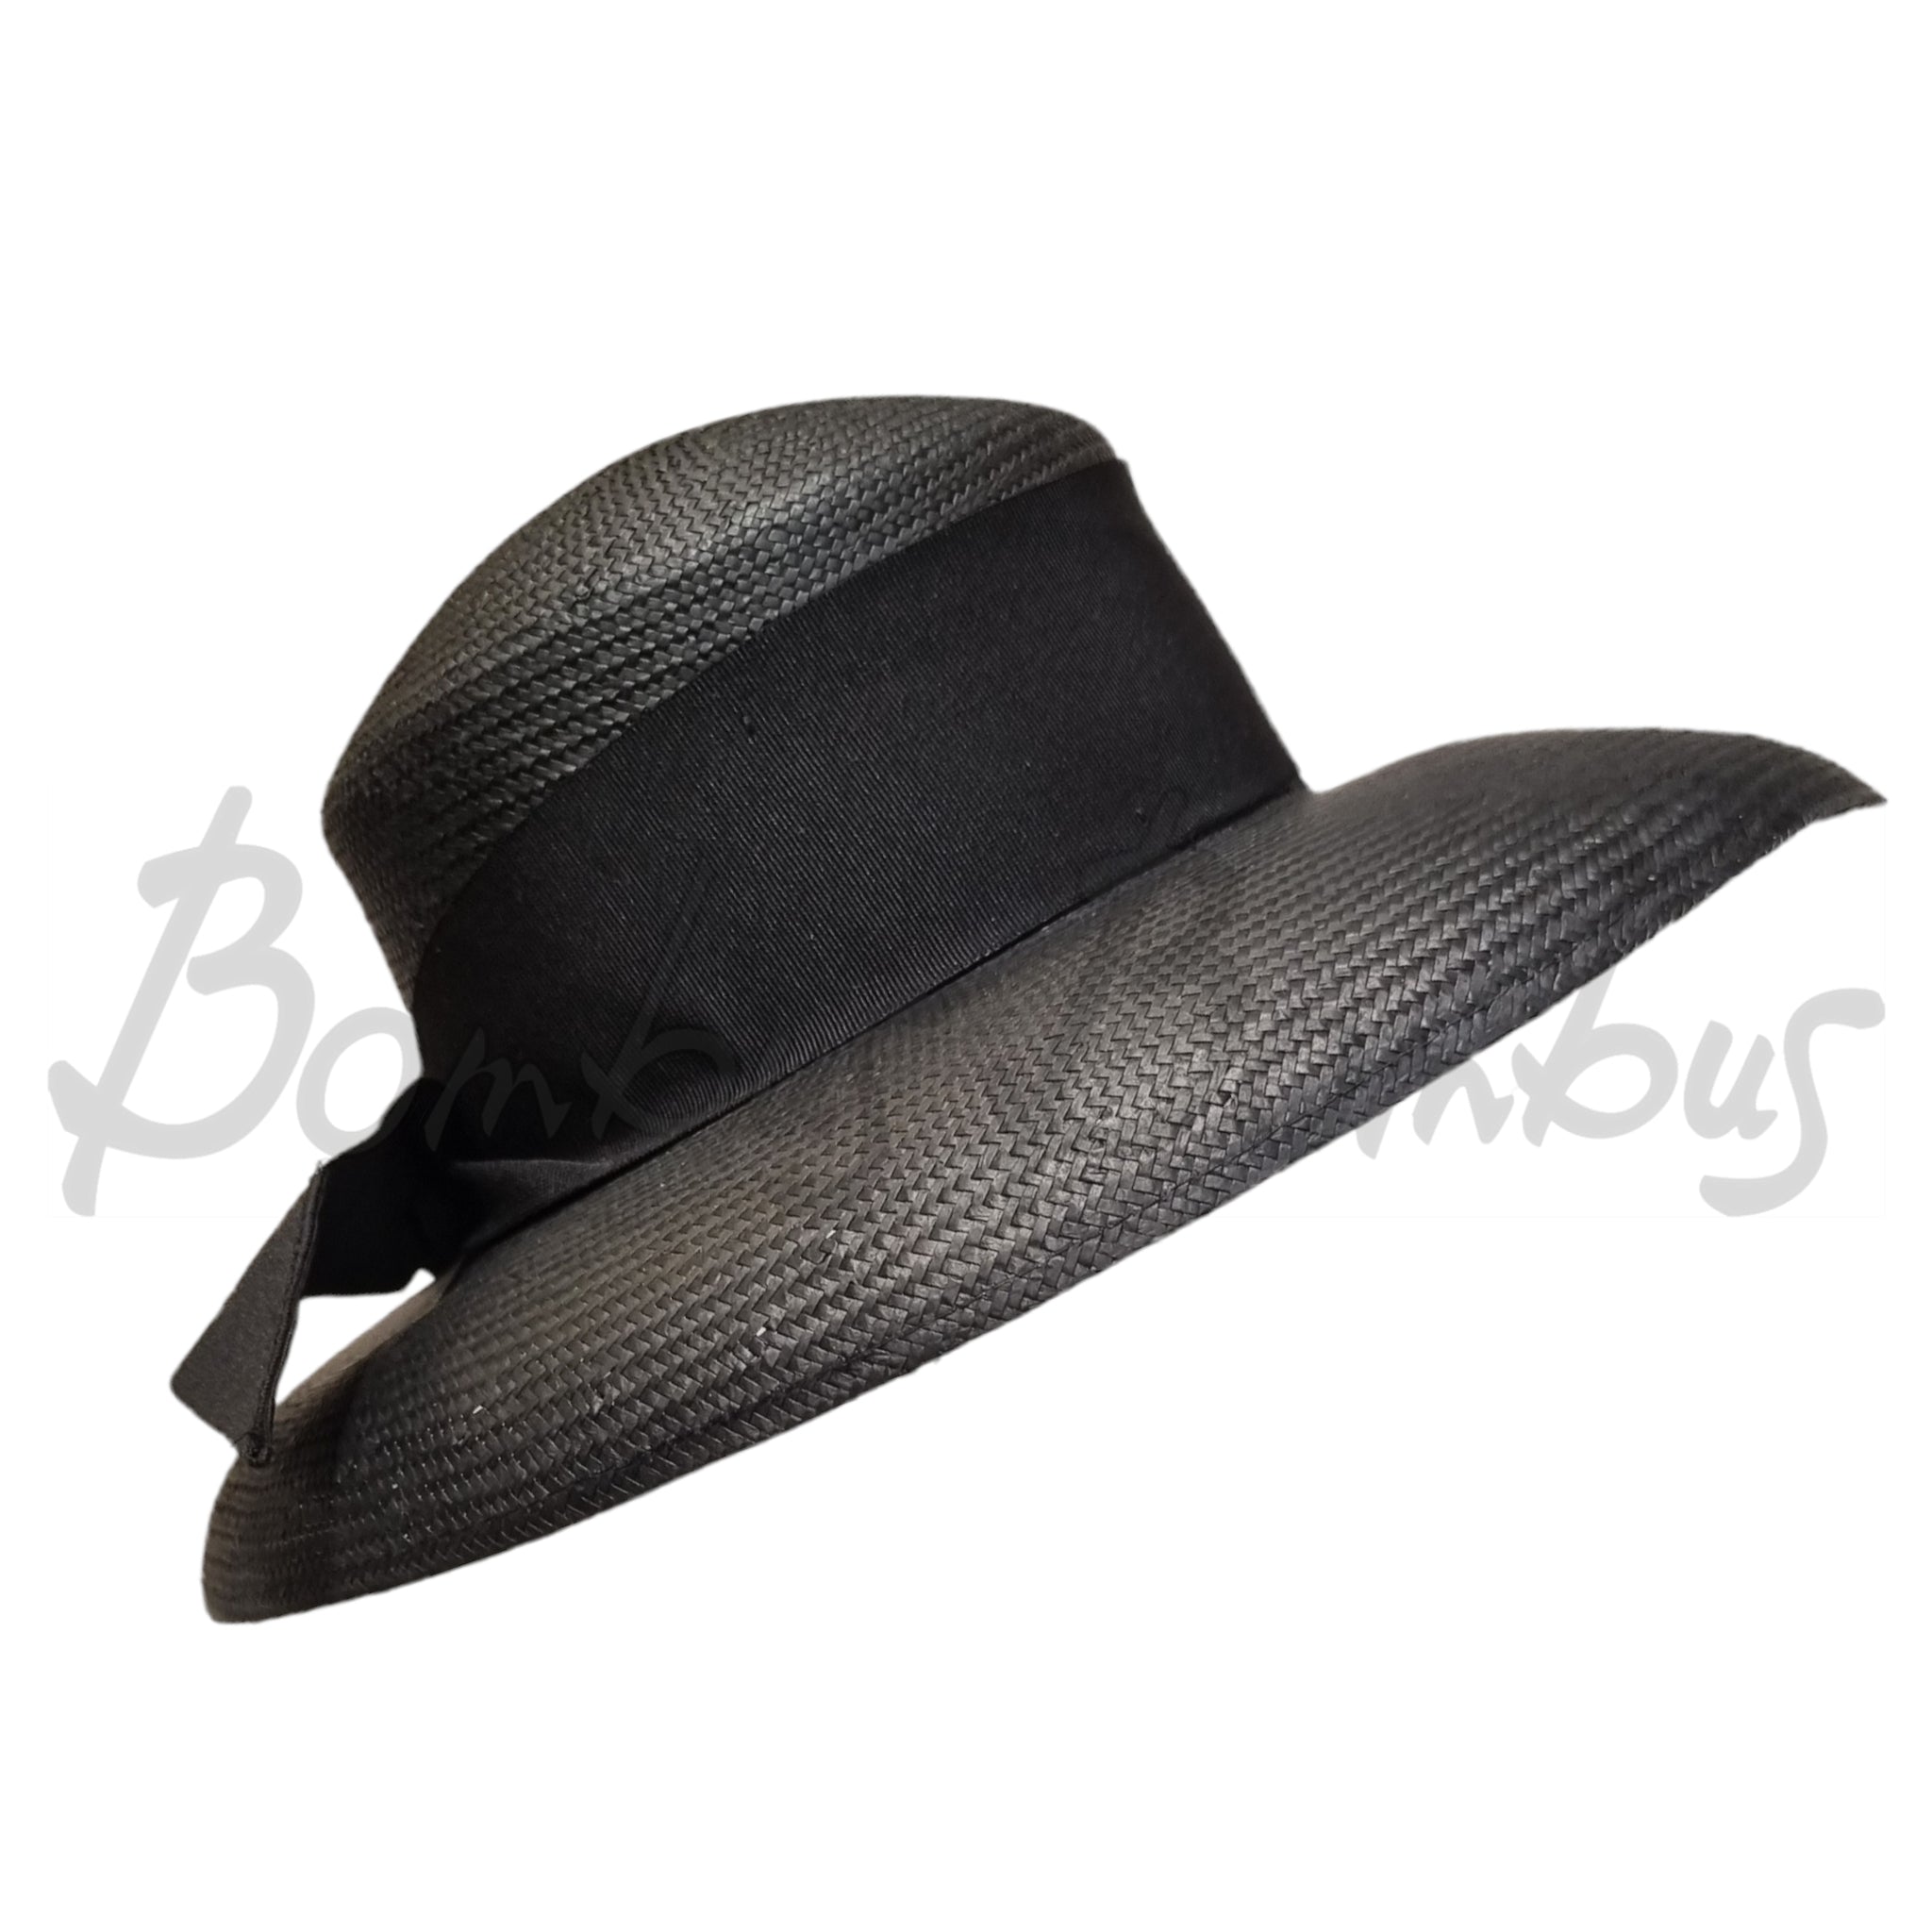 Kati Niemi, musta, leveälierinen hattu. Hatussa on leveä musta ripsinauha ja rusetti. Sivukuva.